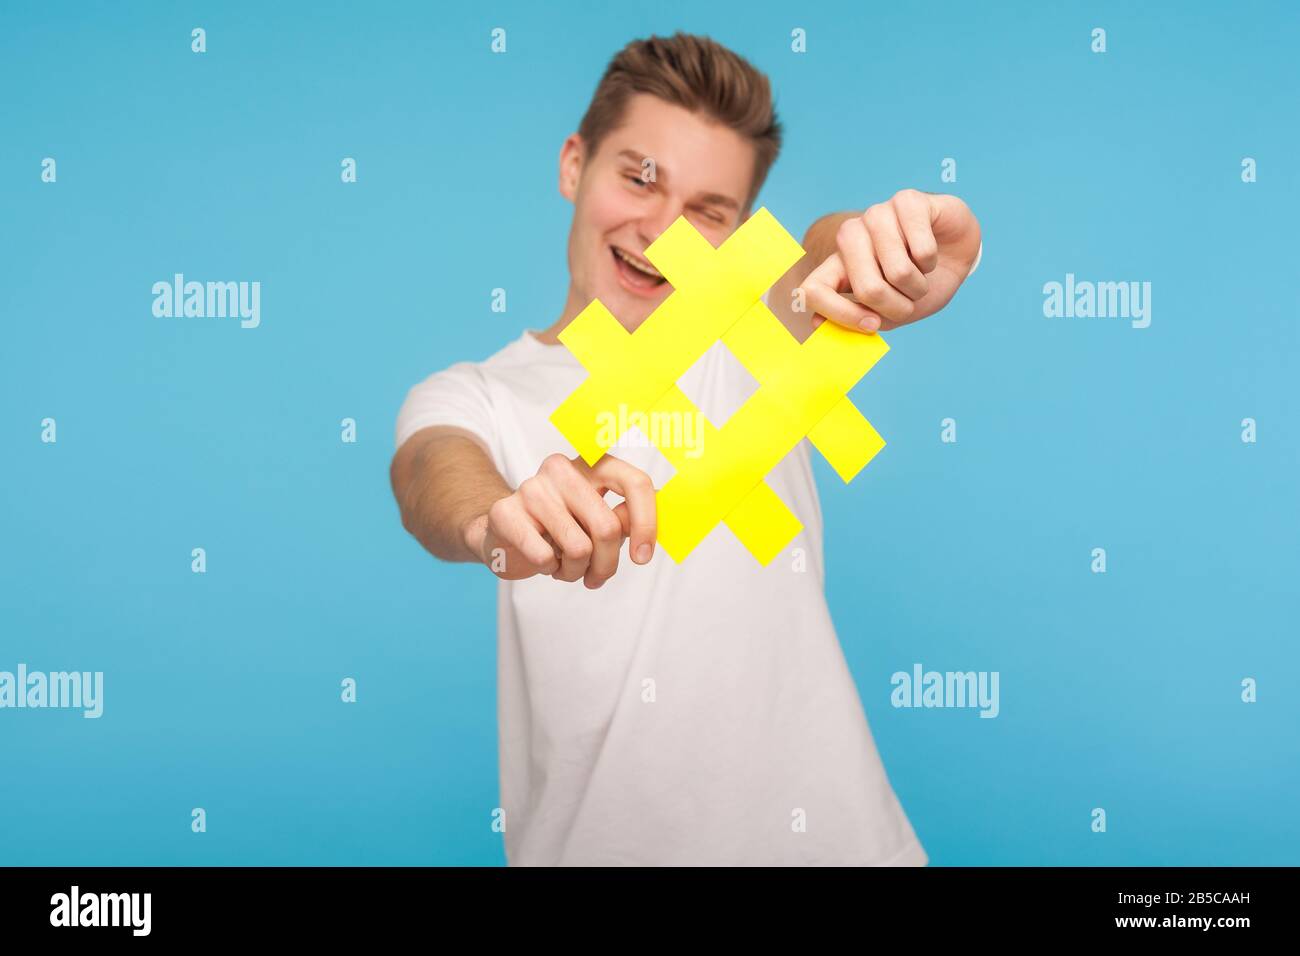 Folgen Sie dem trendigen Blog. Fröhlicher Mann im T-Shirt, der das gelbe Hashtag-Symbol an die Kamera hält, Hash-Zeichen zeigt und virale Social-Media-Topi empfiehlt Stockfoto